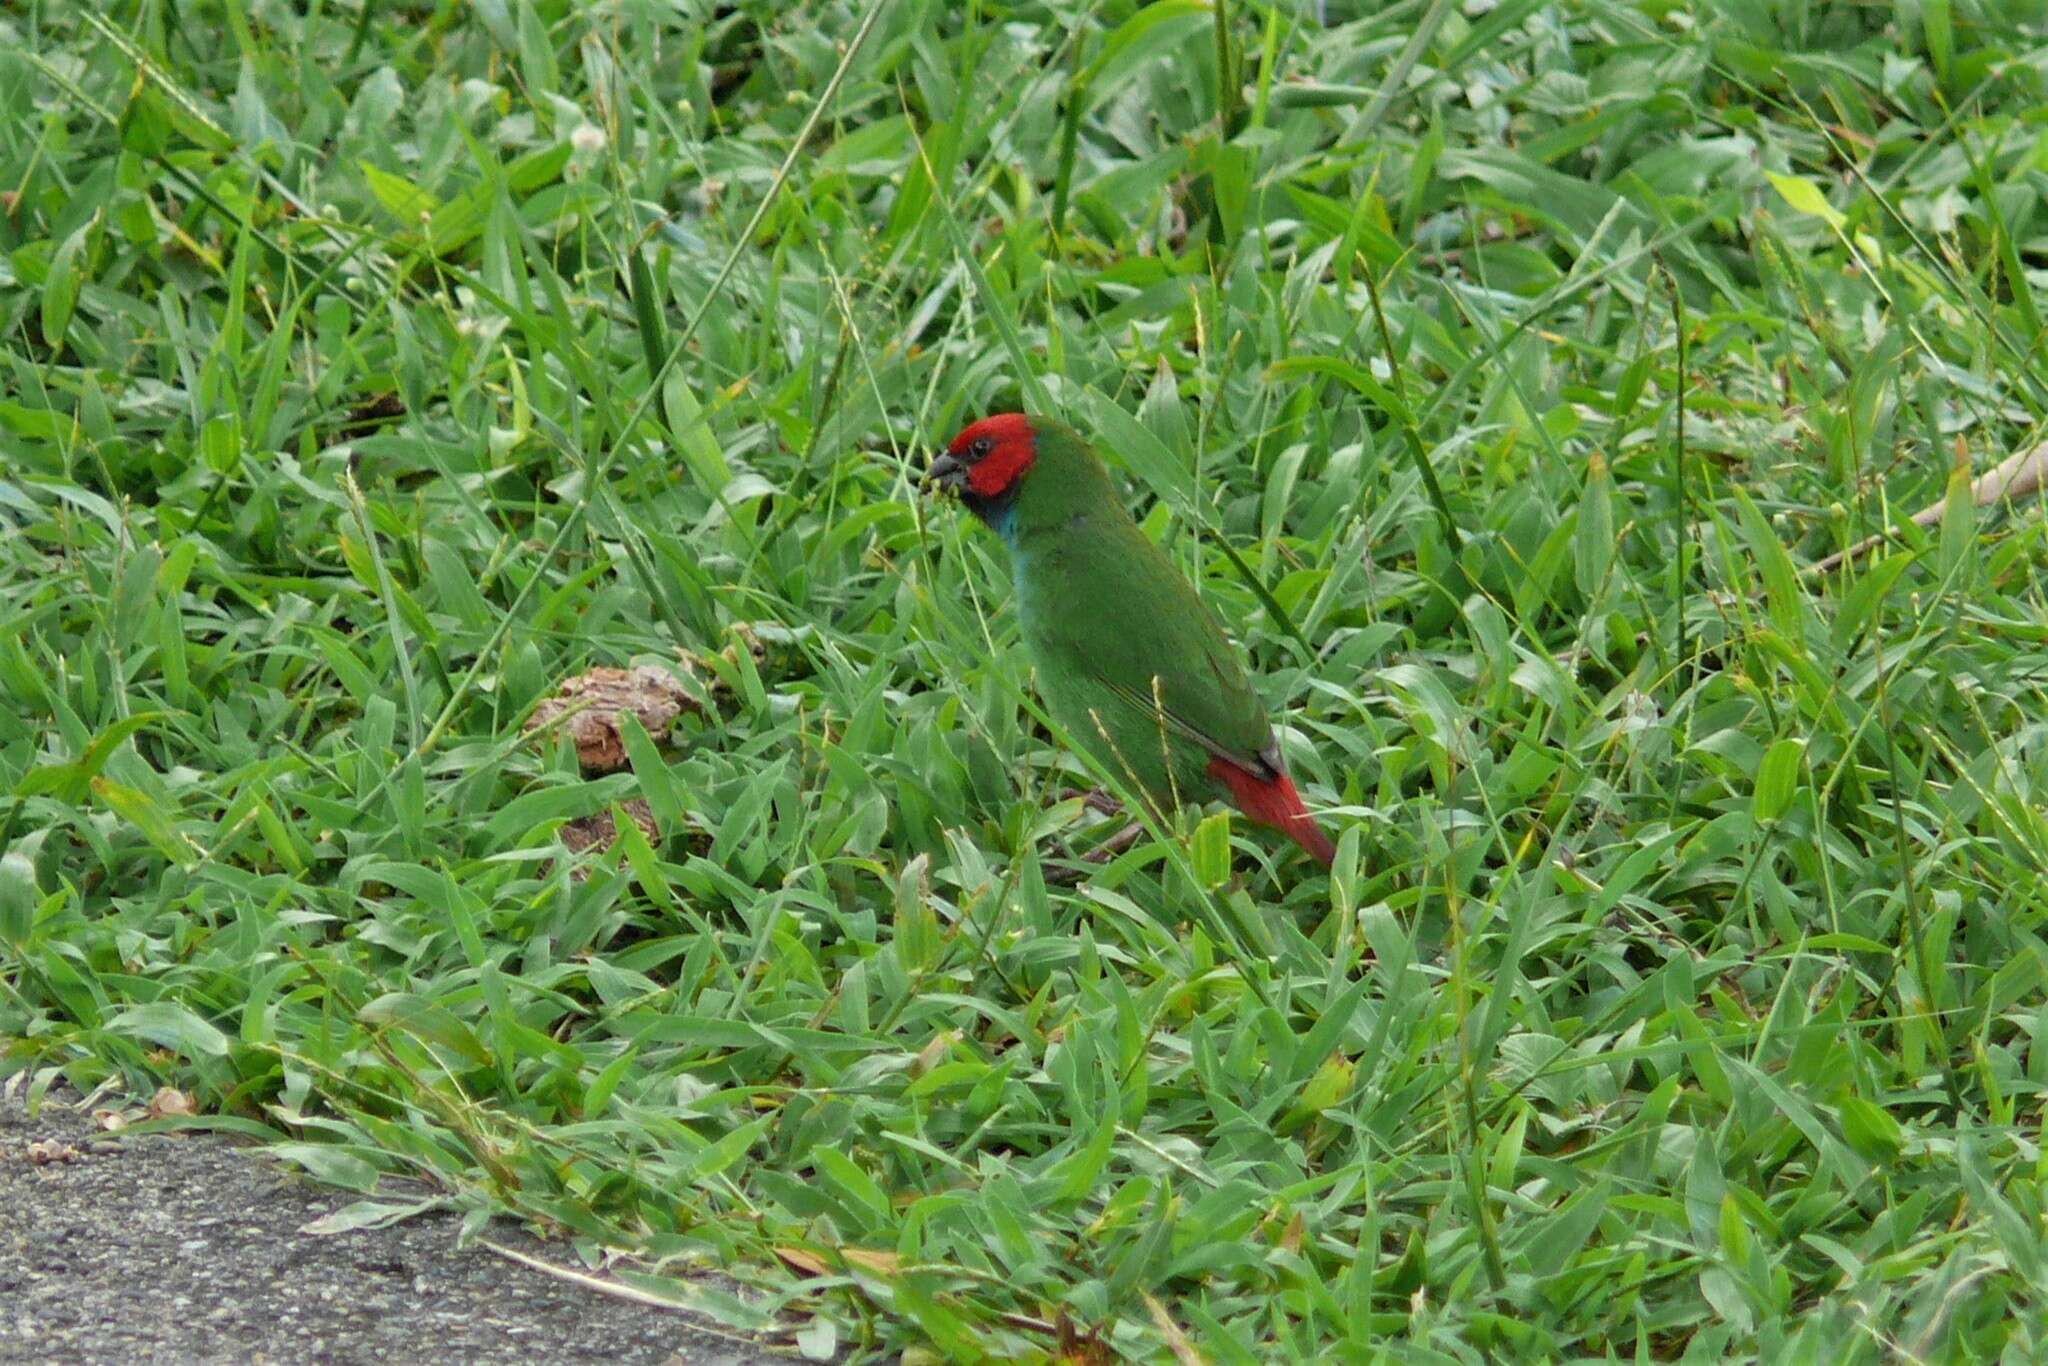 Image of Fiji Parrotfinch